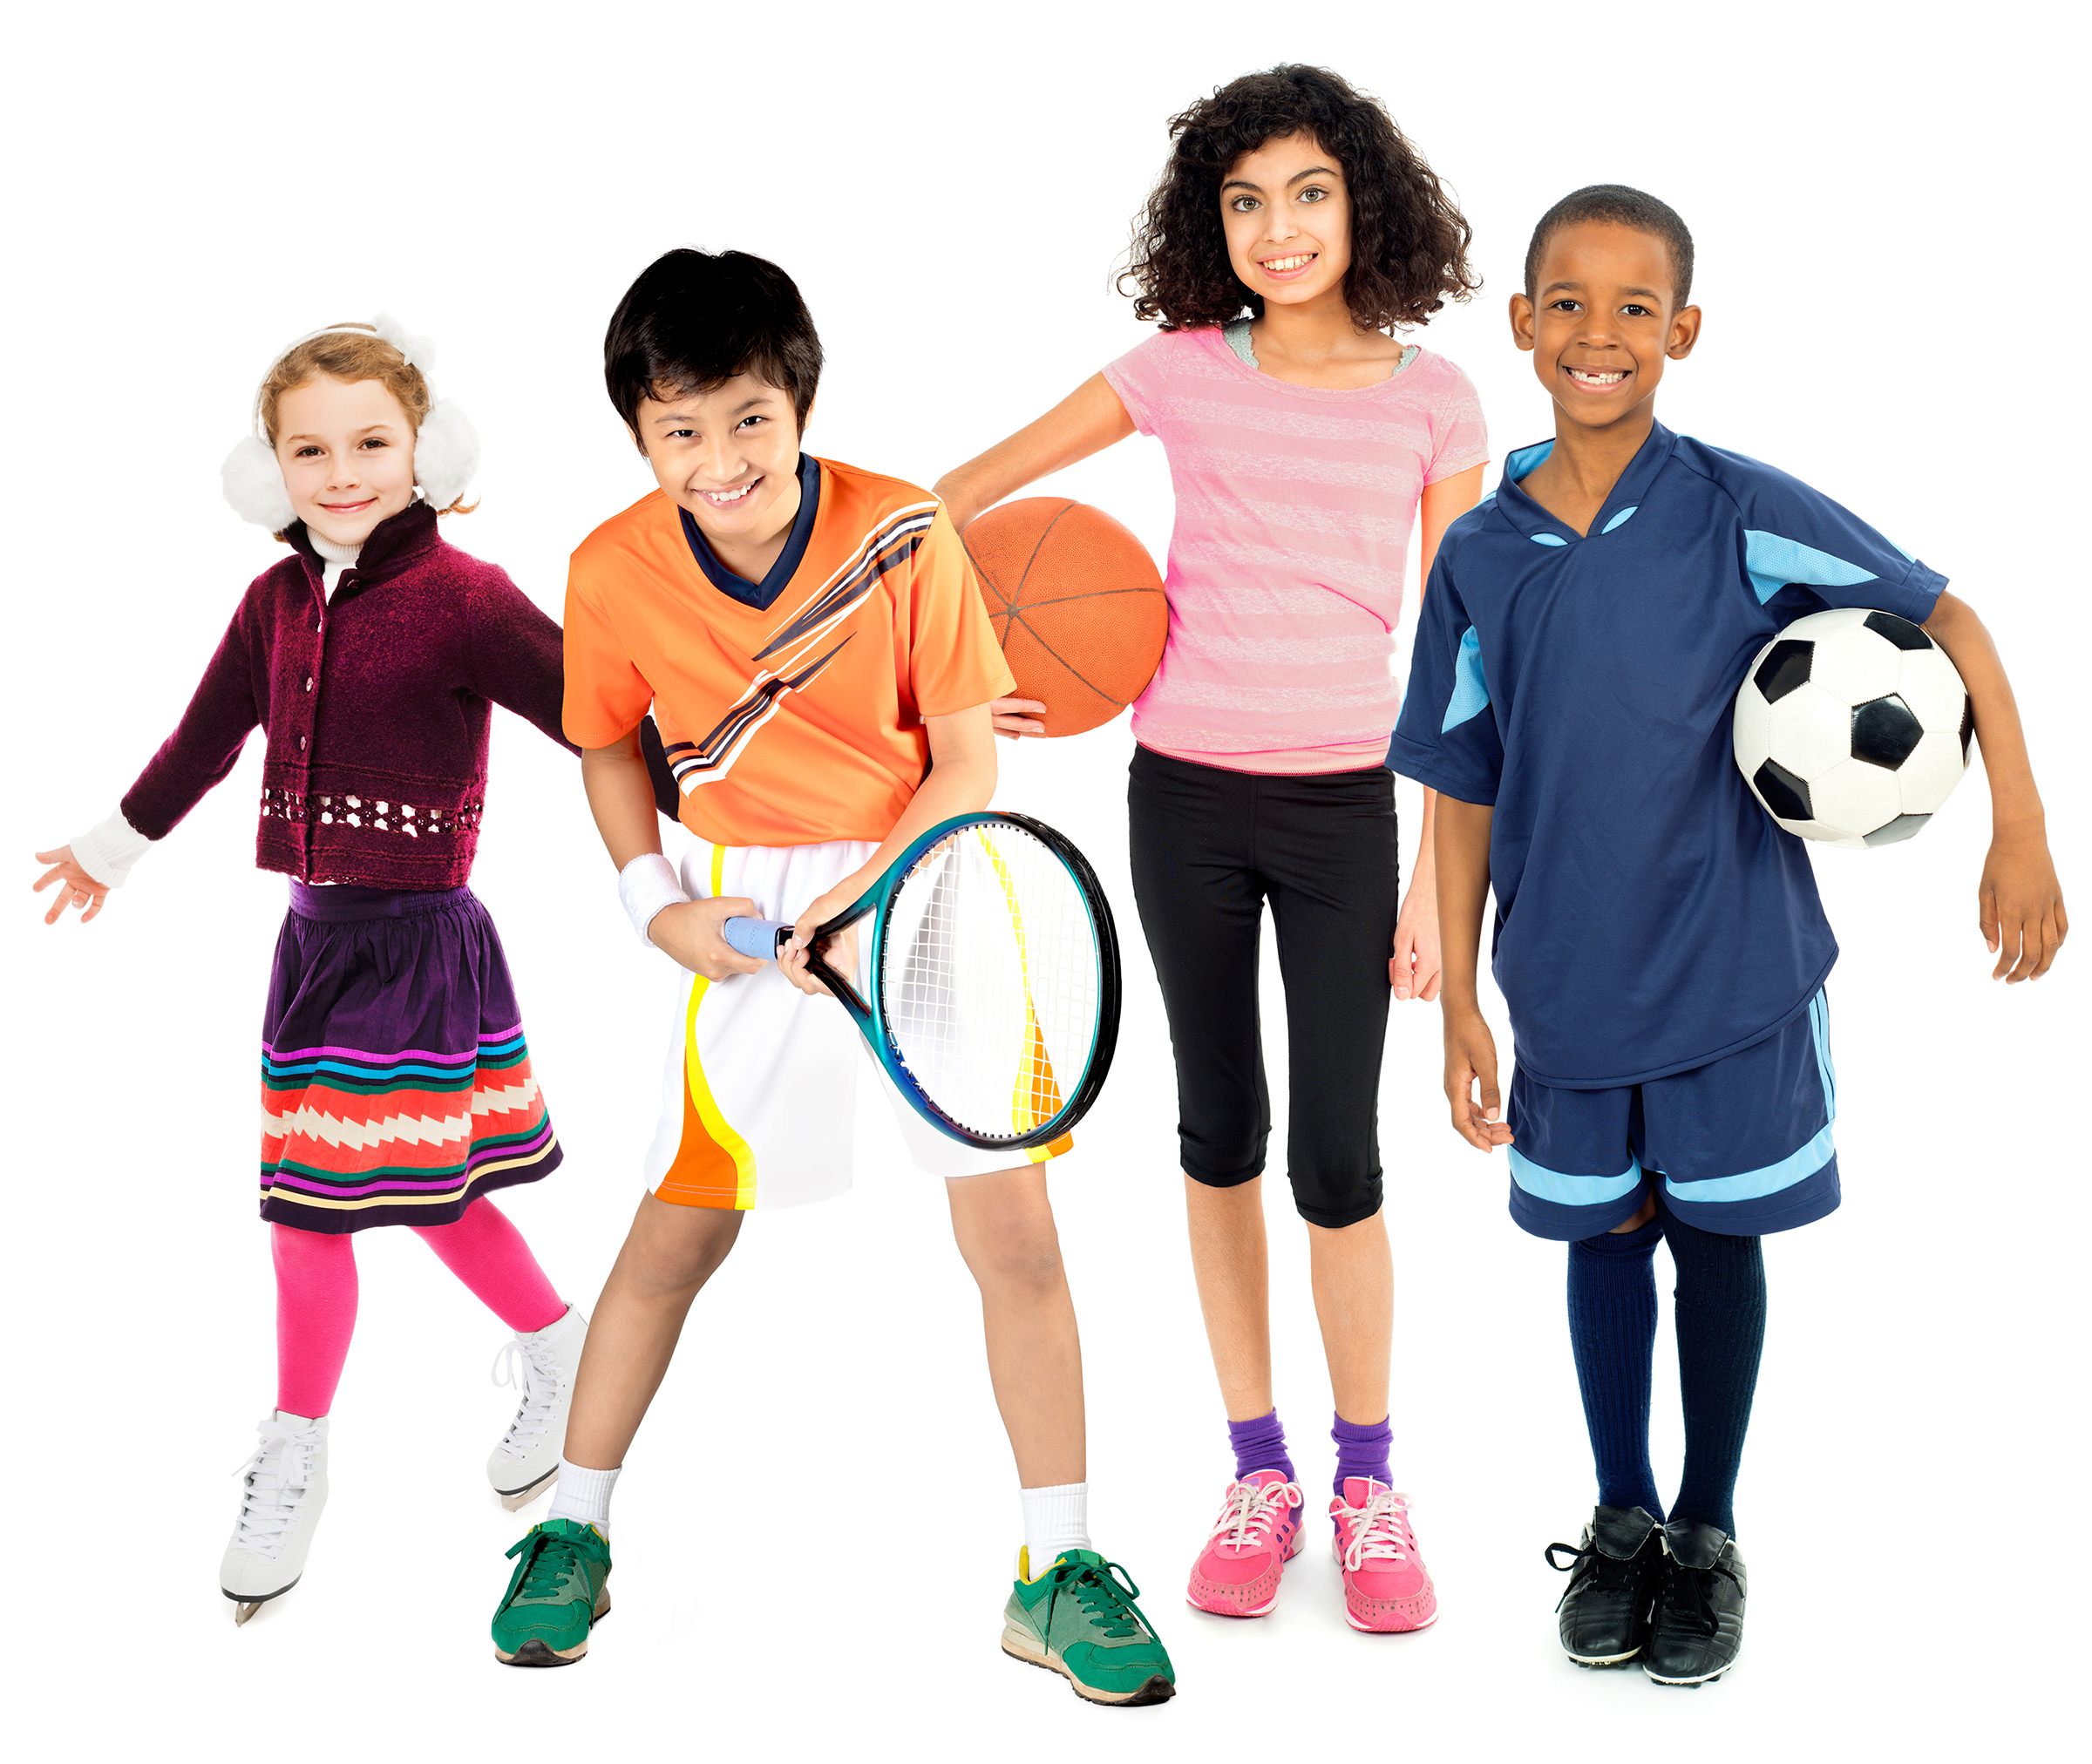 Do you enjoy playing sports. Спортивные дети. Детский спорт. Спортивные увлечения. Sport для детей.